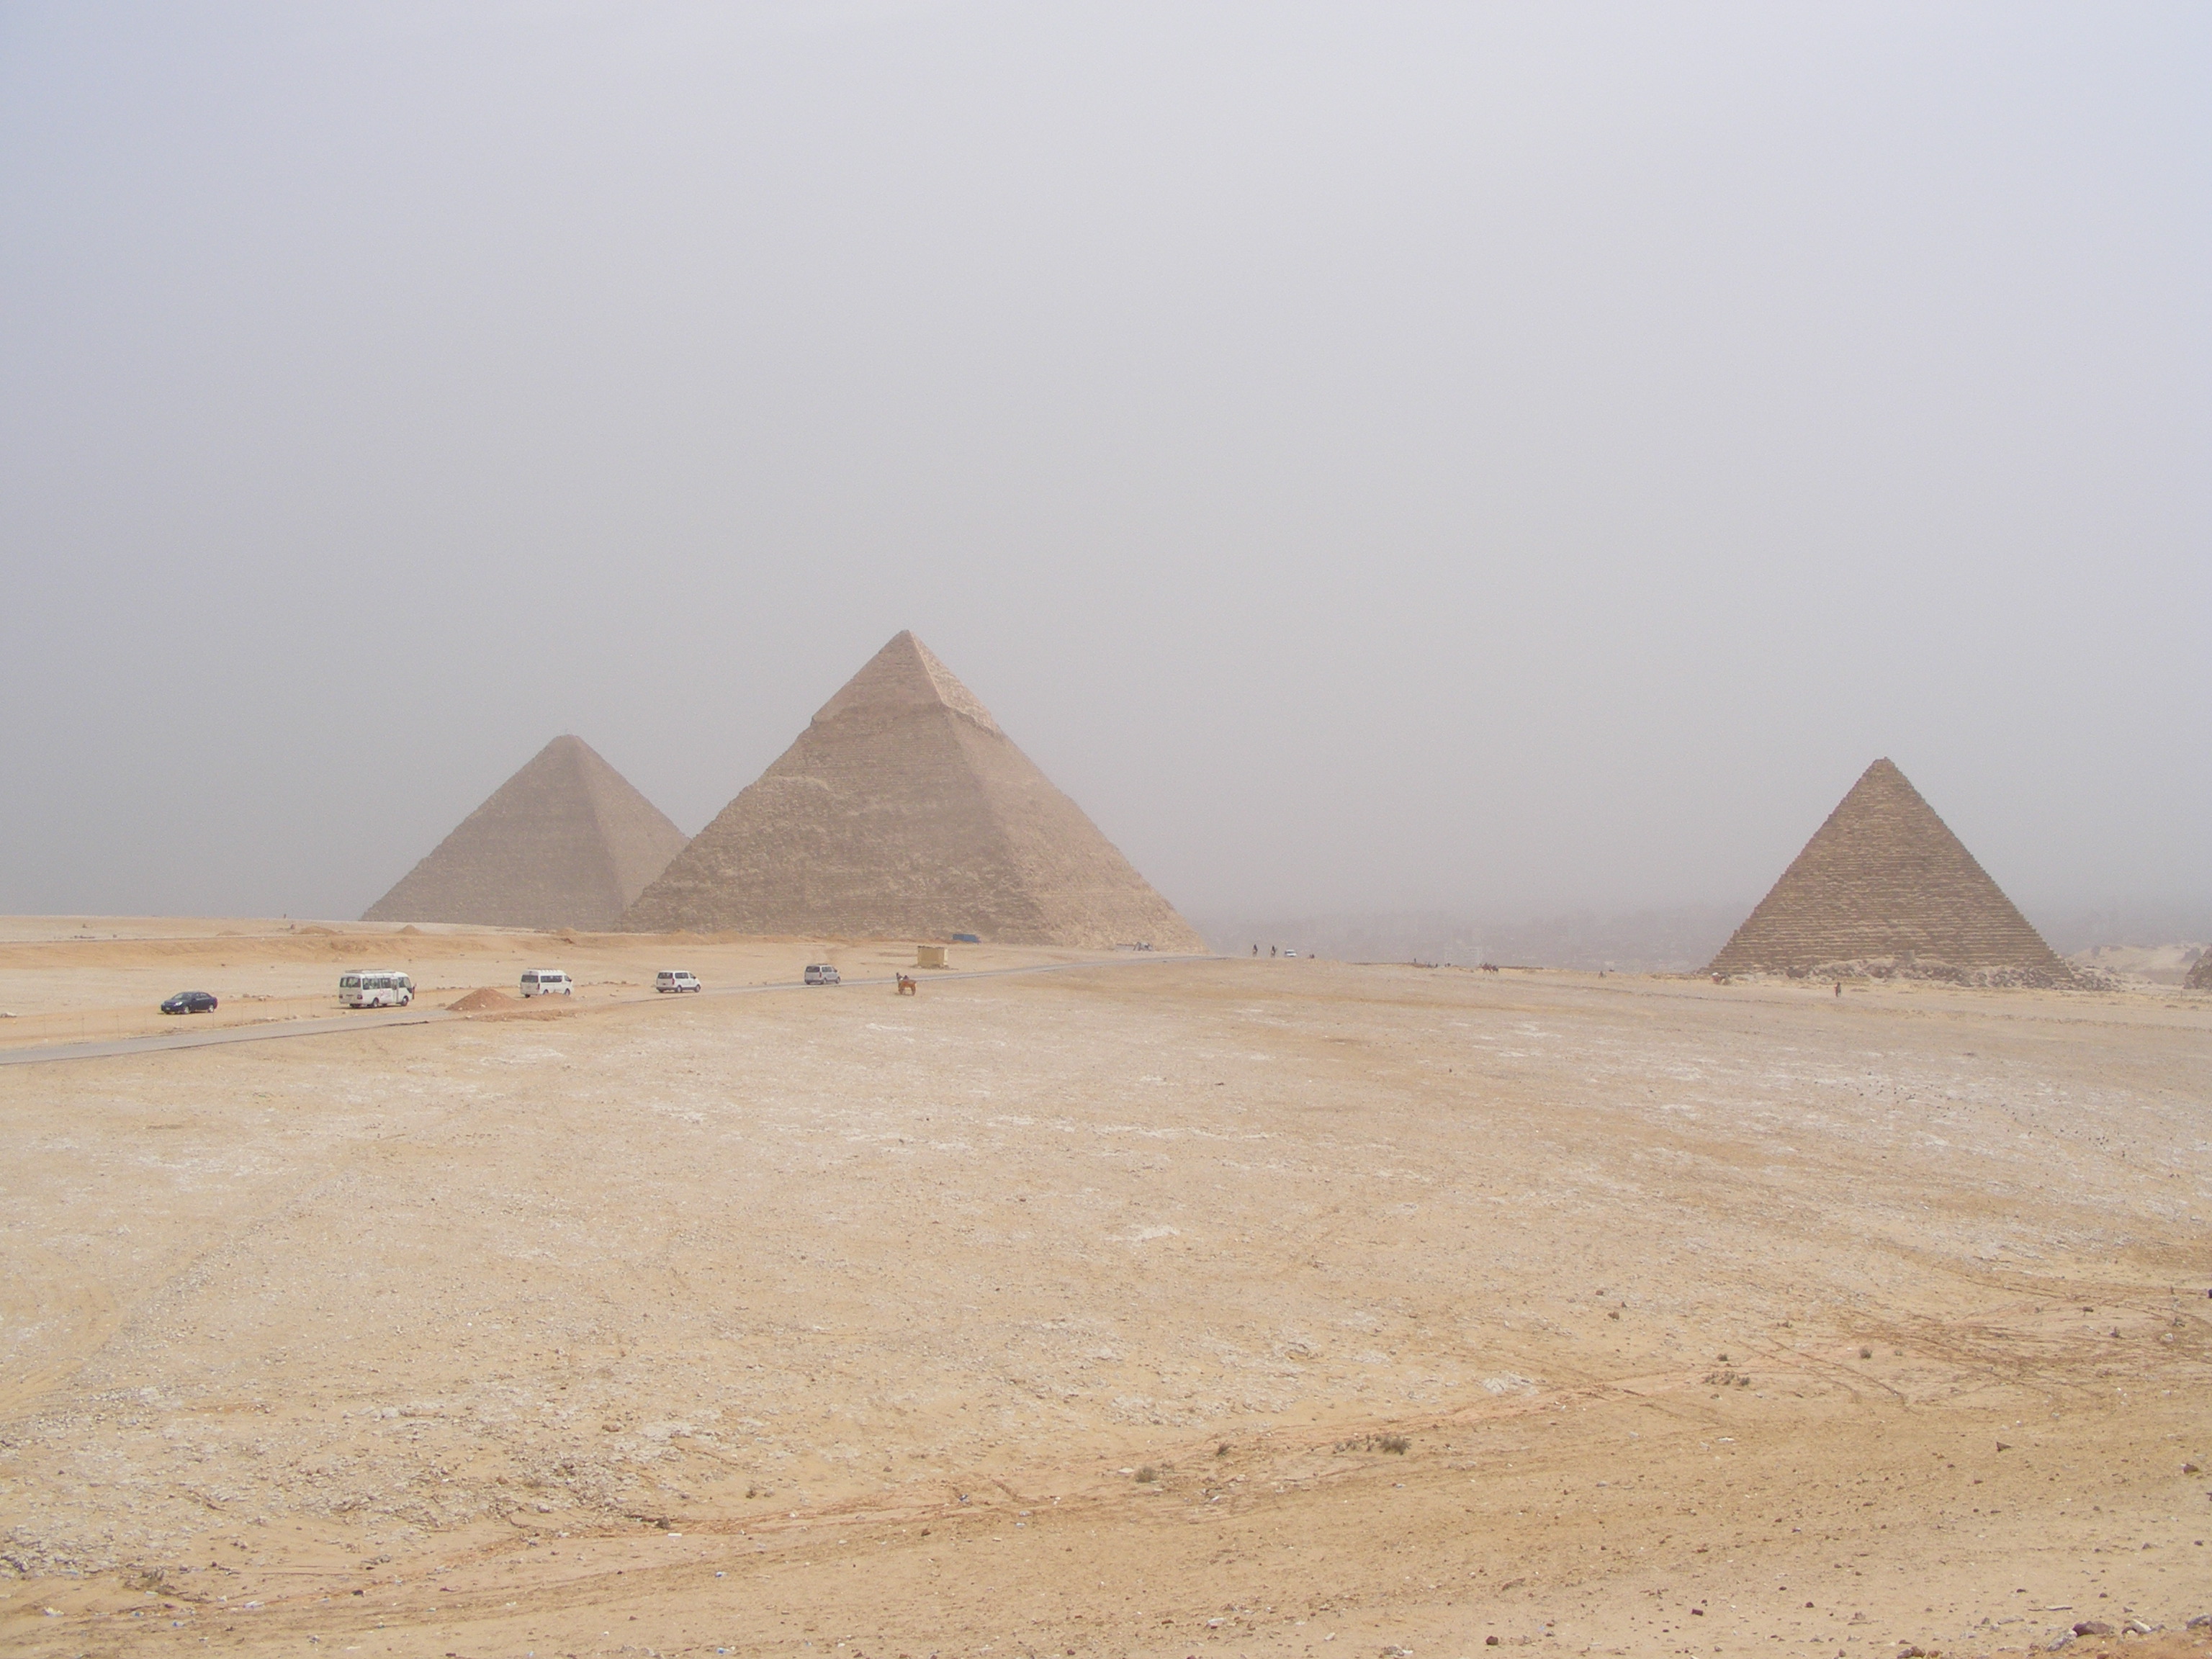 The Pyramids at Giza.